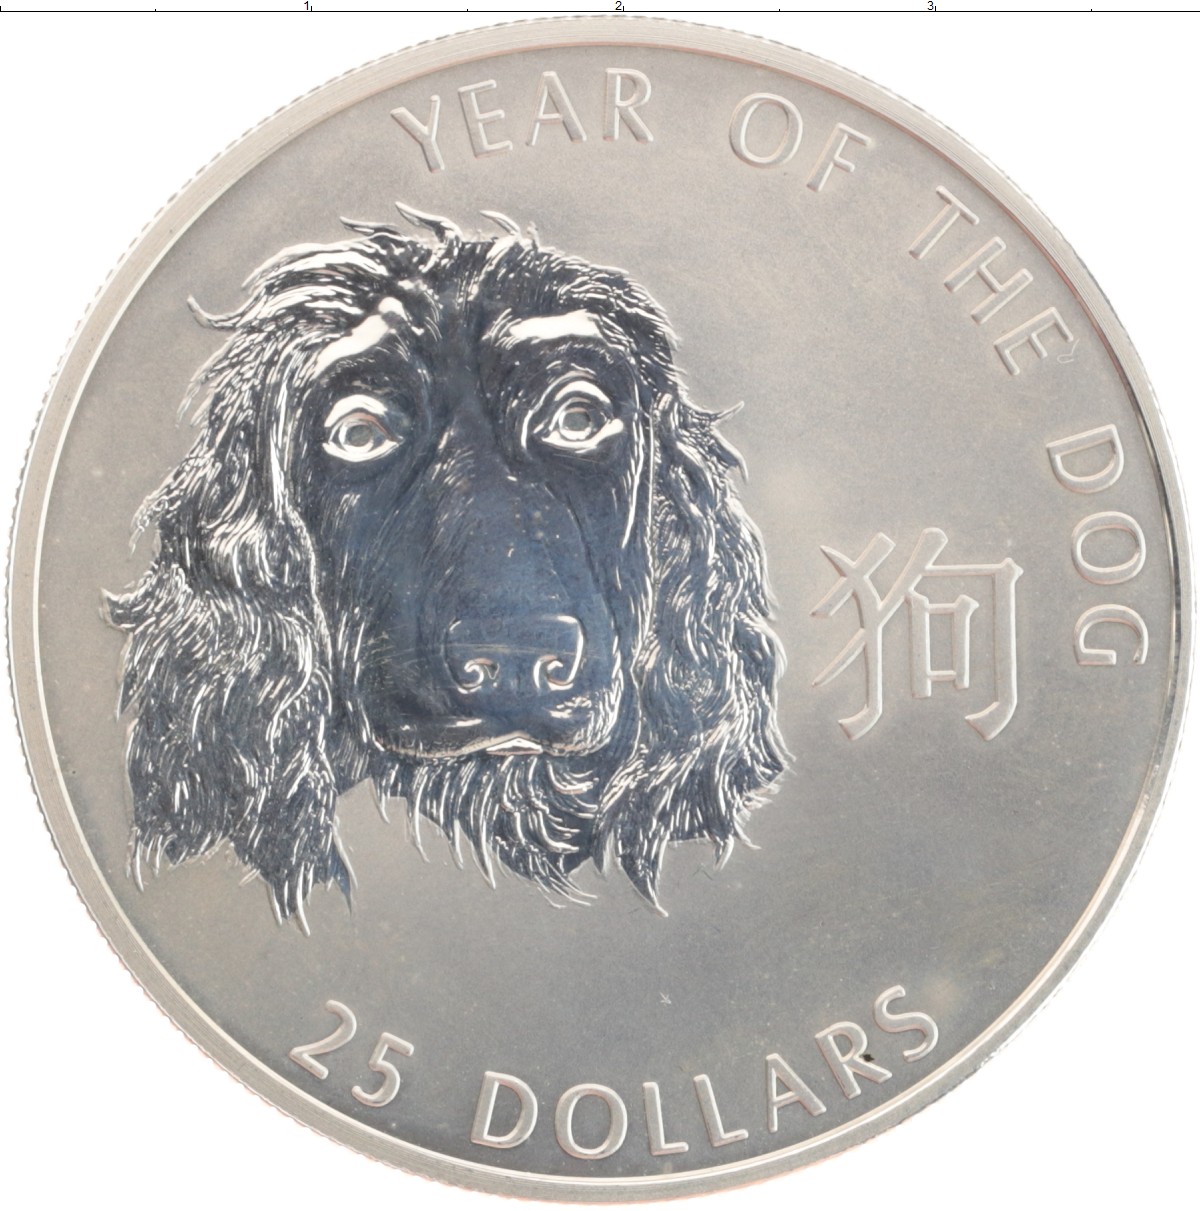 Bendog монета. Монета серебро собаки. Монета 25 долларов Соломоновы острова. Монета Соломоновы острова 2 доллара 2015 года медведь и бык.